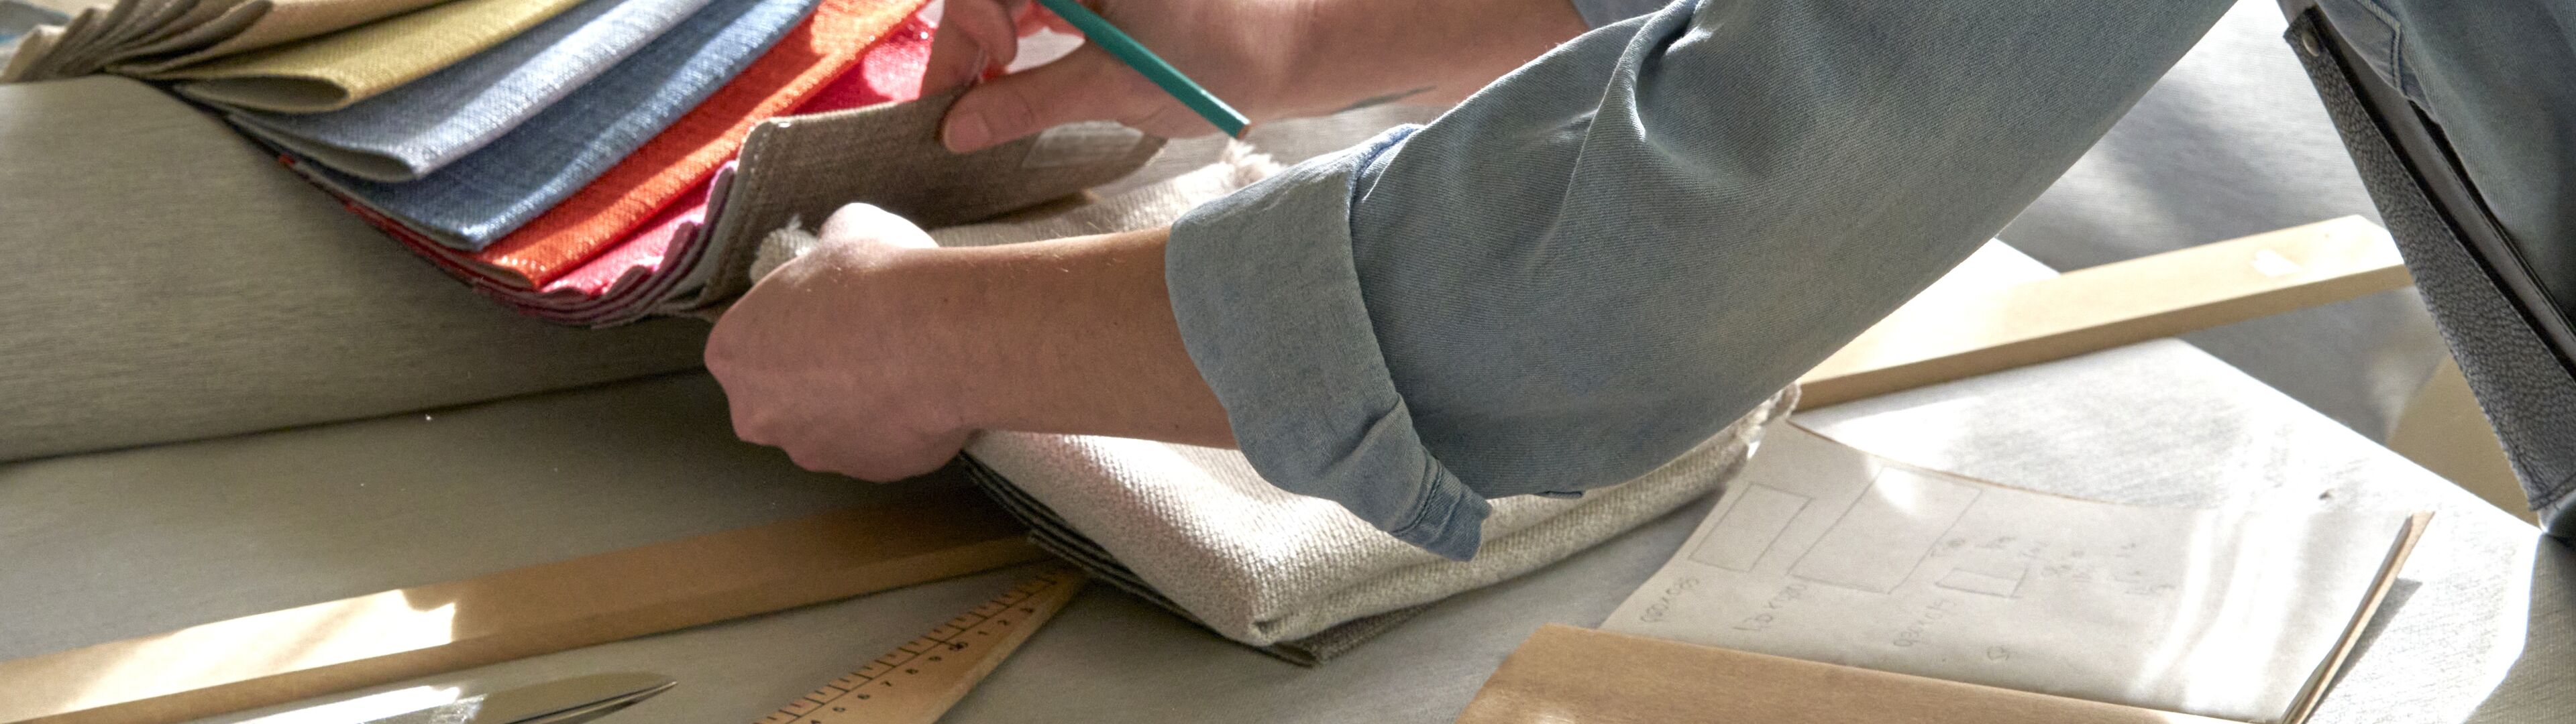 Una persona selecciona meticulosamente muestras de tela para sastrería, con herramientas de medición y patrones sobre una mesa de madera en un espacio de trabajo bien iluminado.